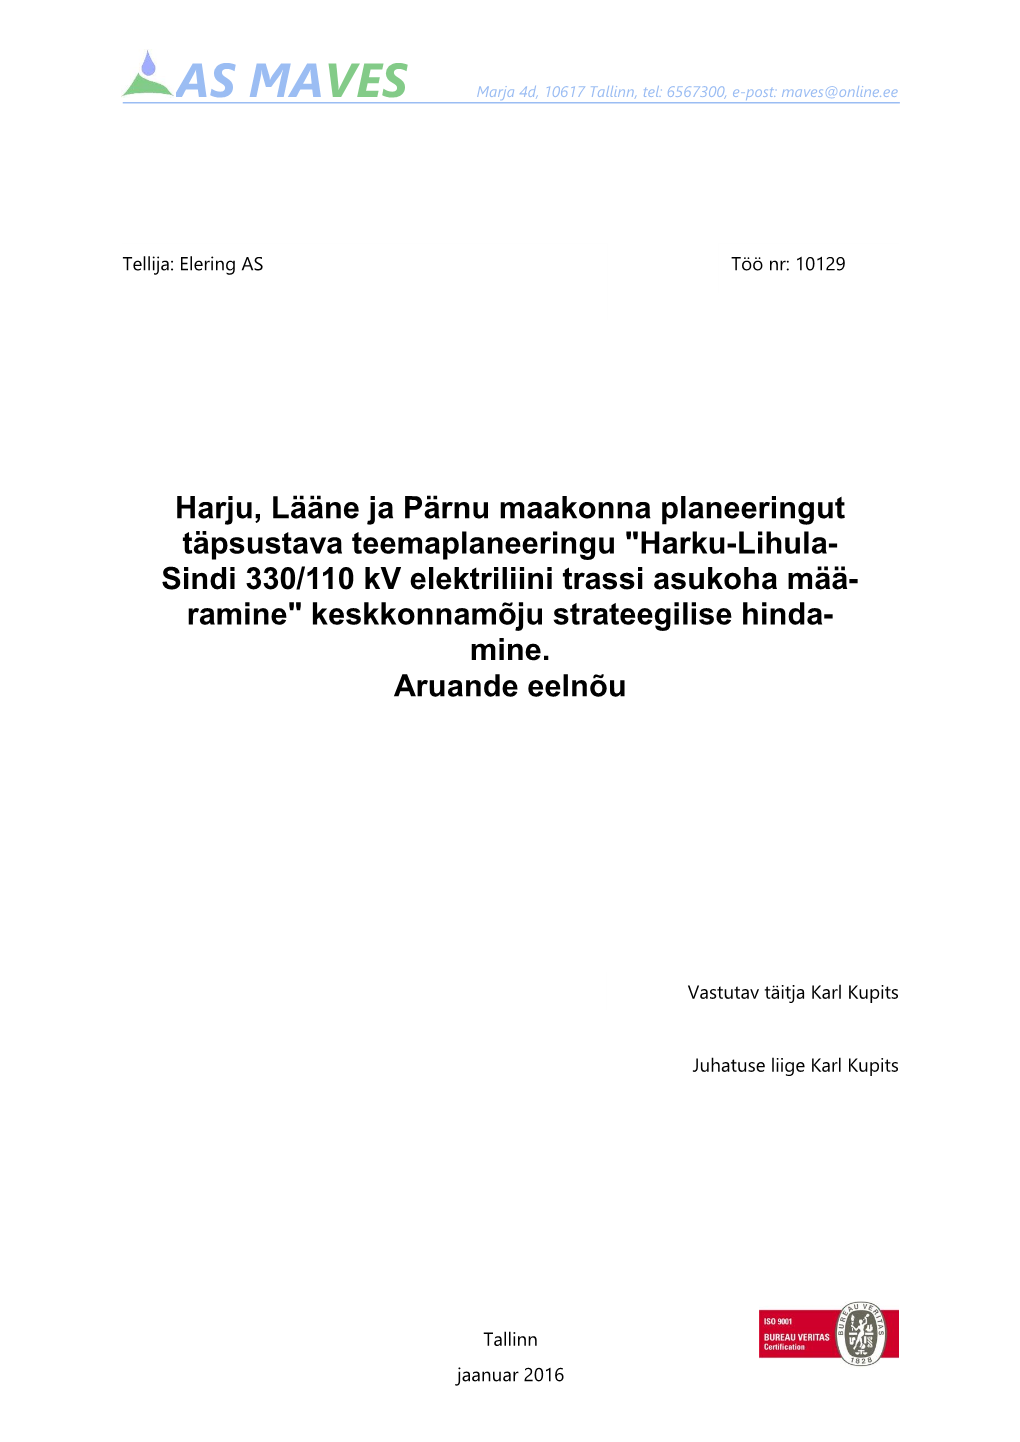 Harku-Lihula-Sindi 330/110 Kv Elektriliini Trassi Asukoha Määramine" Keskkonnamõju Strateegilise Hindamine